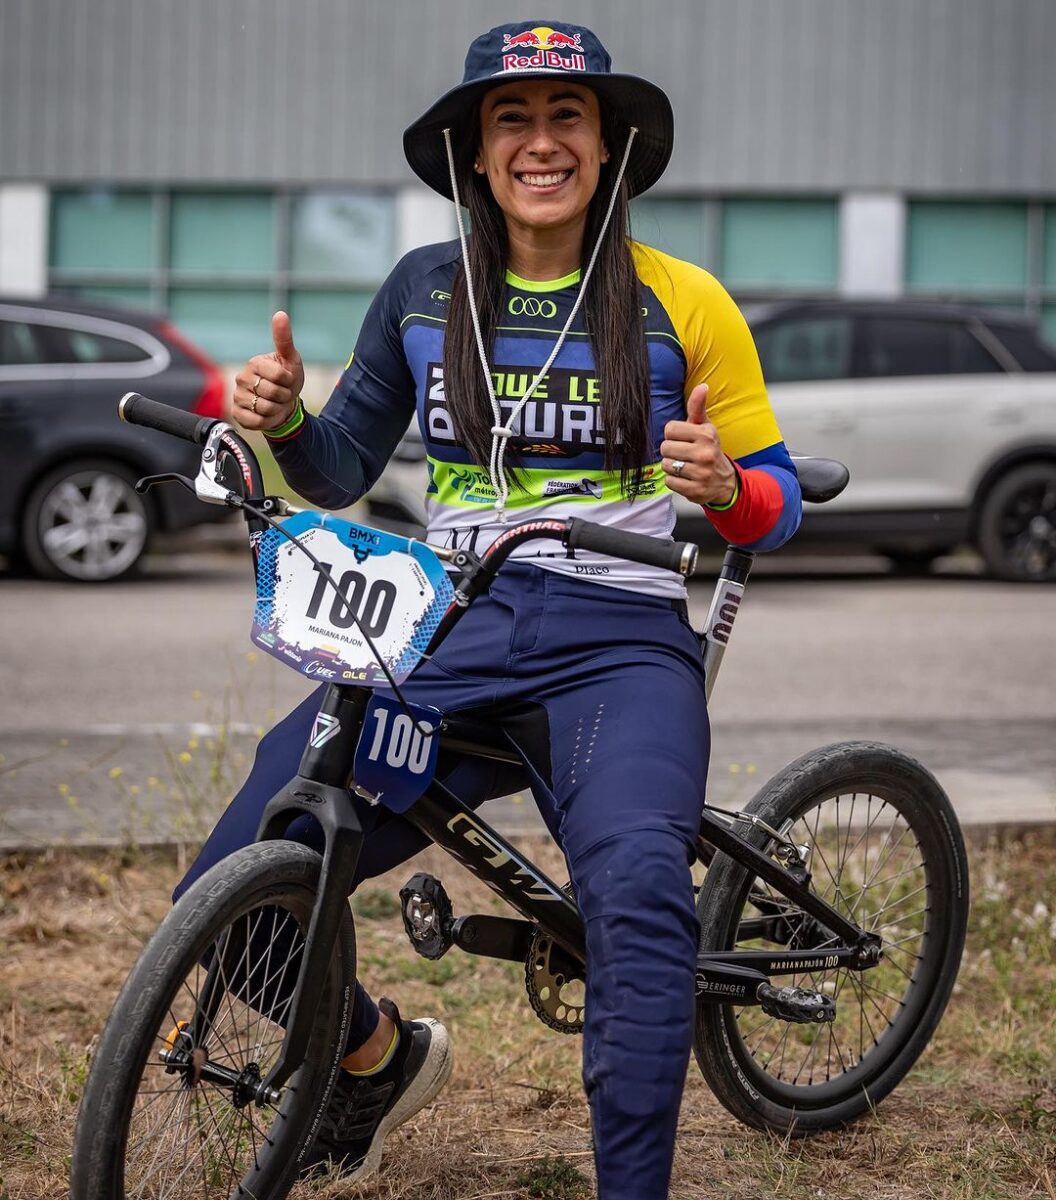 Mariana Pajón la reina Midas del BMX Le contamos cuales son las mejores medallas que ha logrado Mariana Pajón, una de las deportistas que ha dejado en alto el nombre de Colombia.